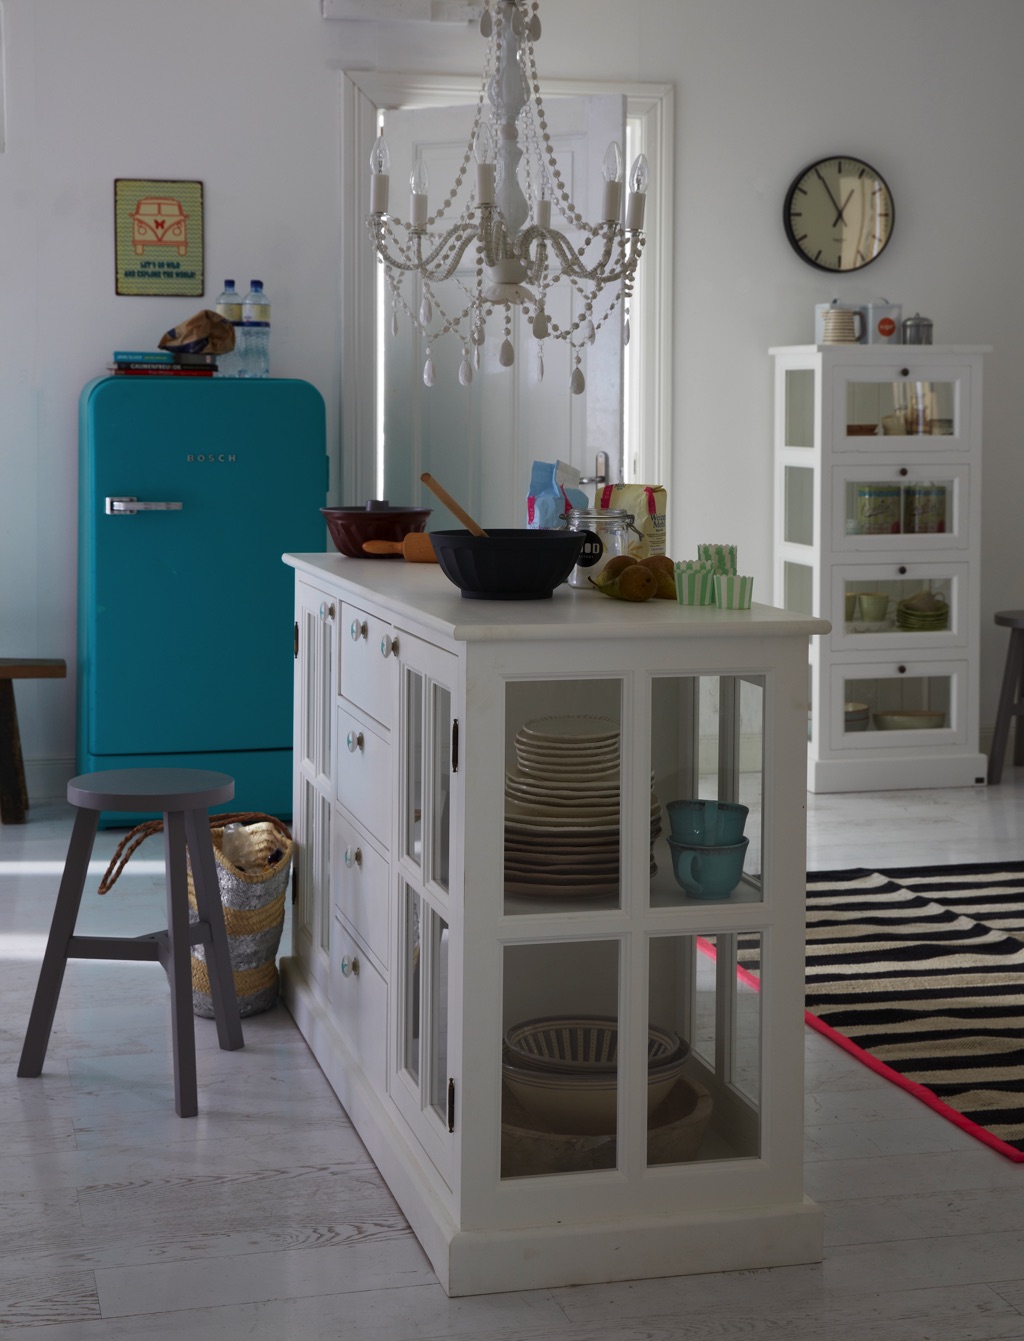 Der Kühlschrank von Bosch fällt auf in seinem tollen Türkis. Auch der Teppich hat nochmal einen Mini-Farbeffekt. Die Möbel sind erhältlich über Car Möbel.